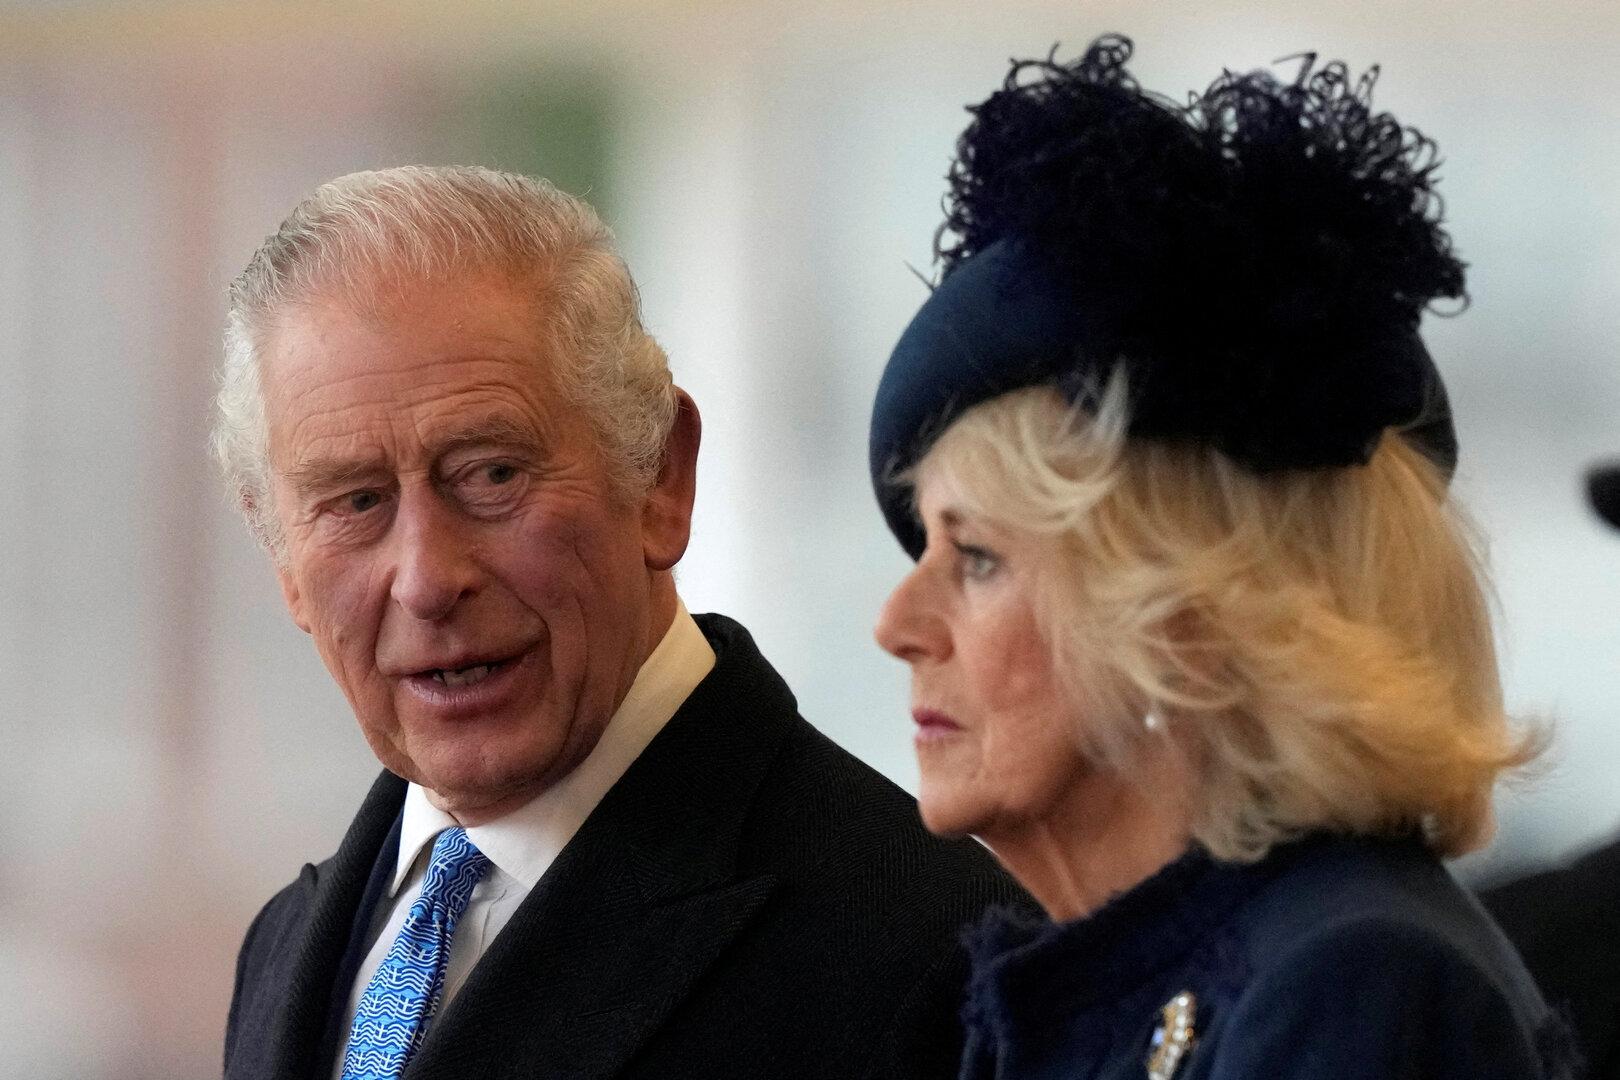 König auf Reisen: Camilla mehr in Sorge um Charles, als bisher gedacht